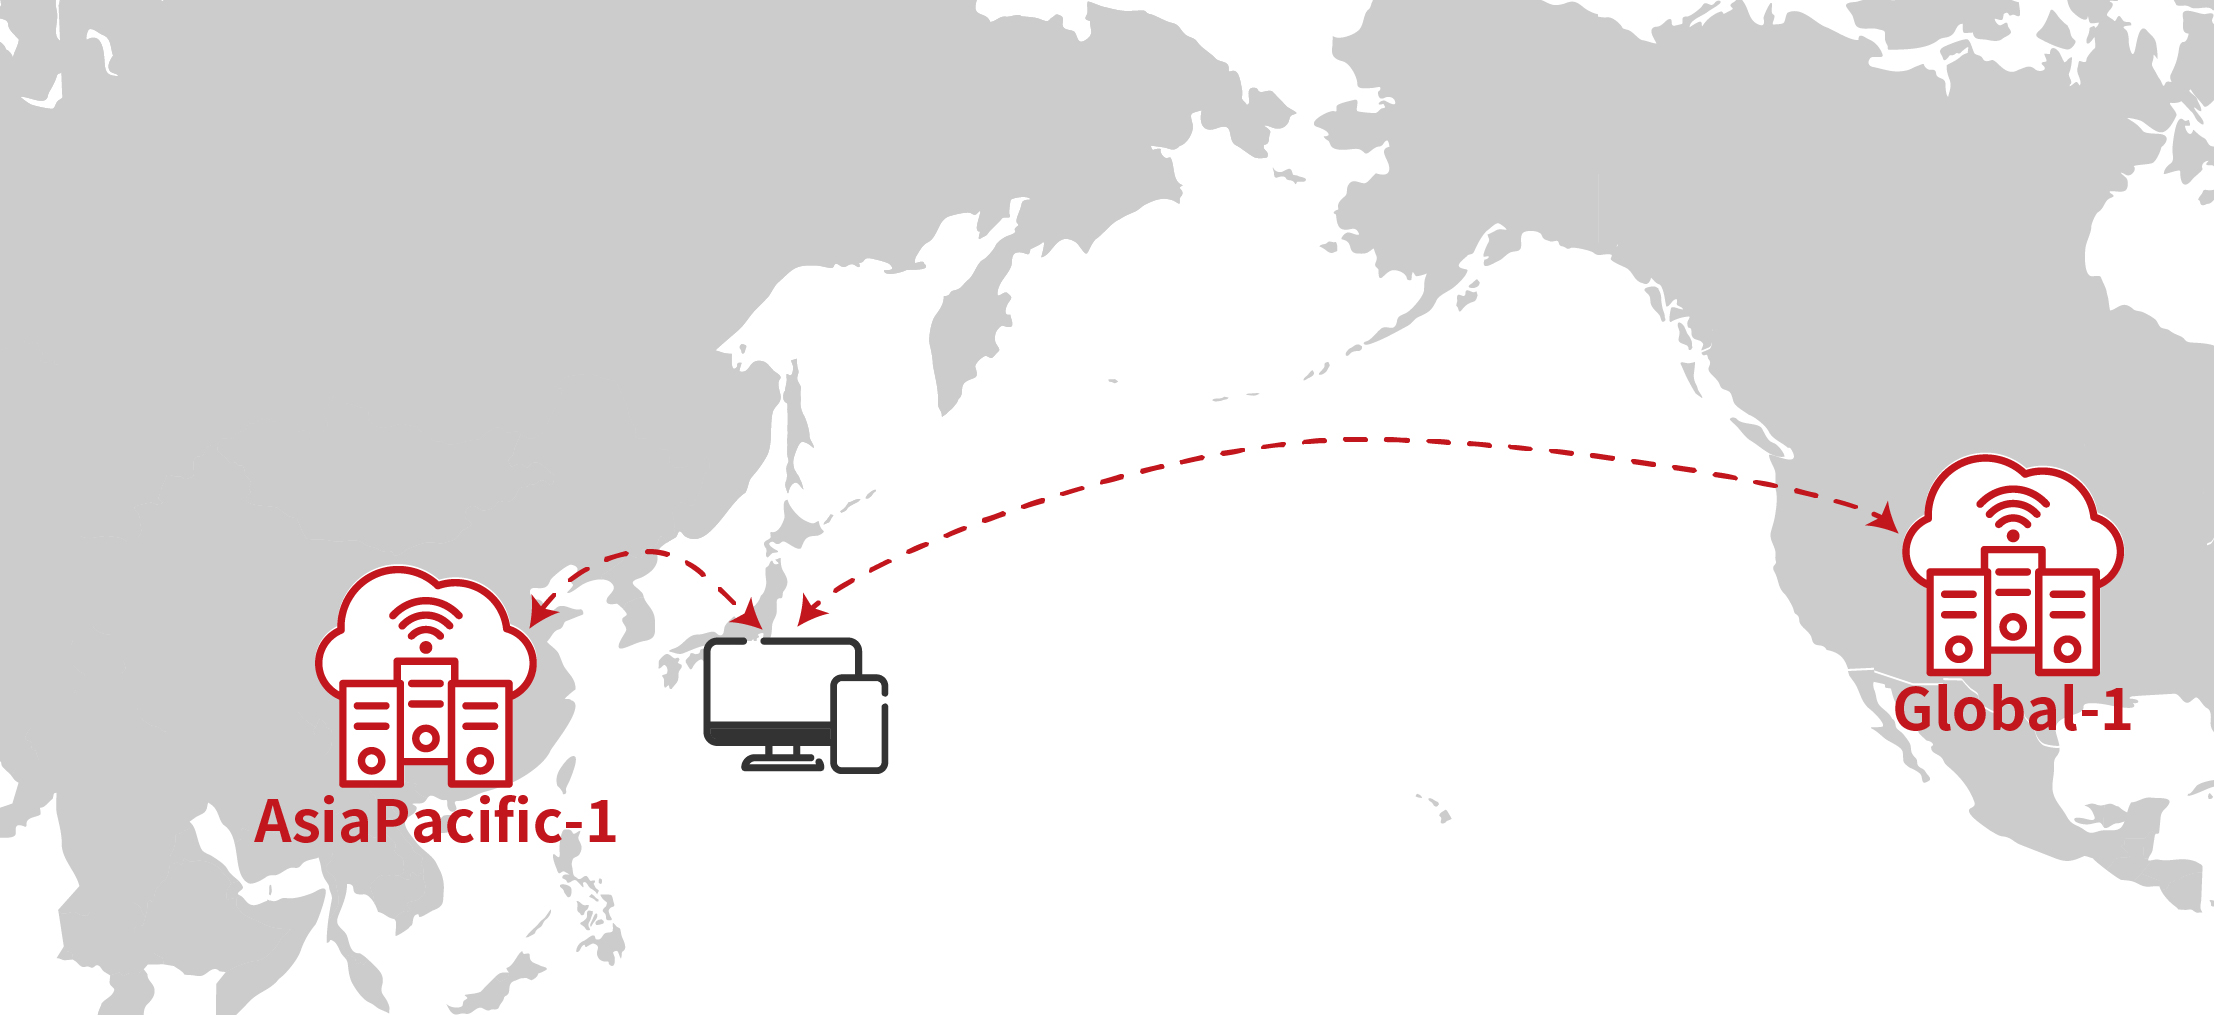 通常はGlobal-1よりもAsiaPacific-1のほうが日本との地理的な距離が近くなり、安定し高速な通信レスポンスを実現します